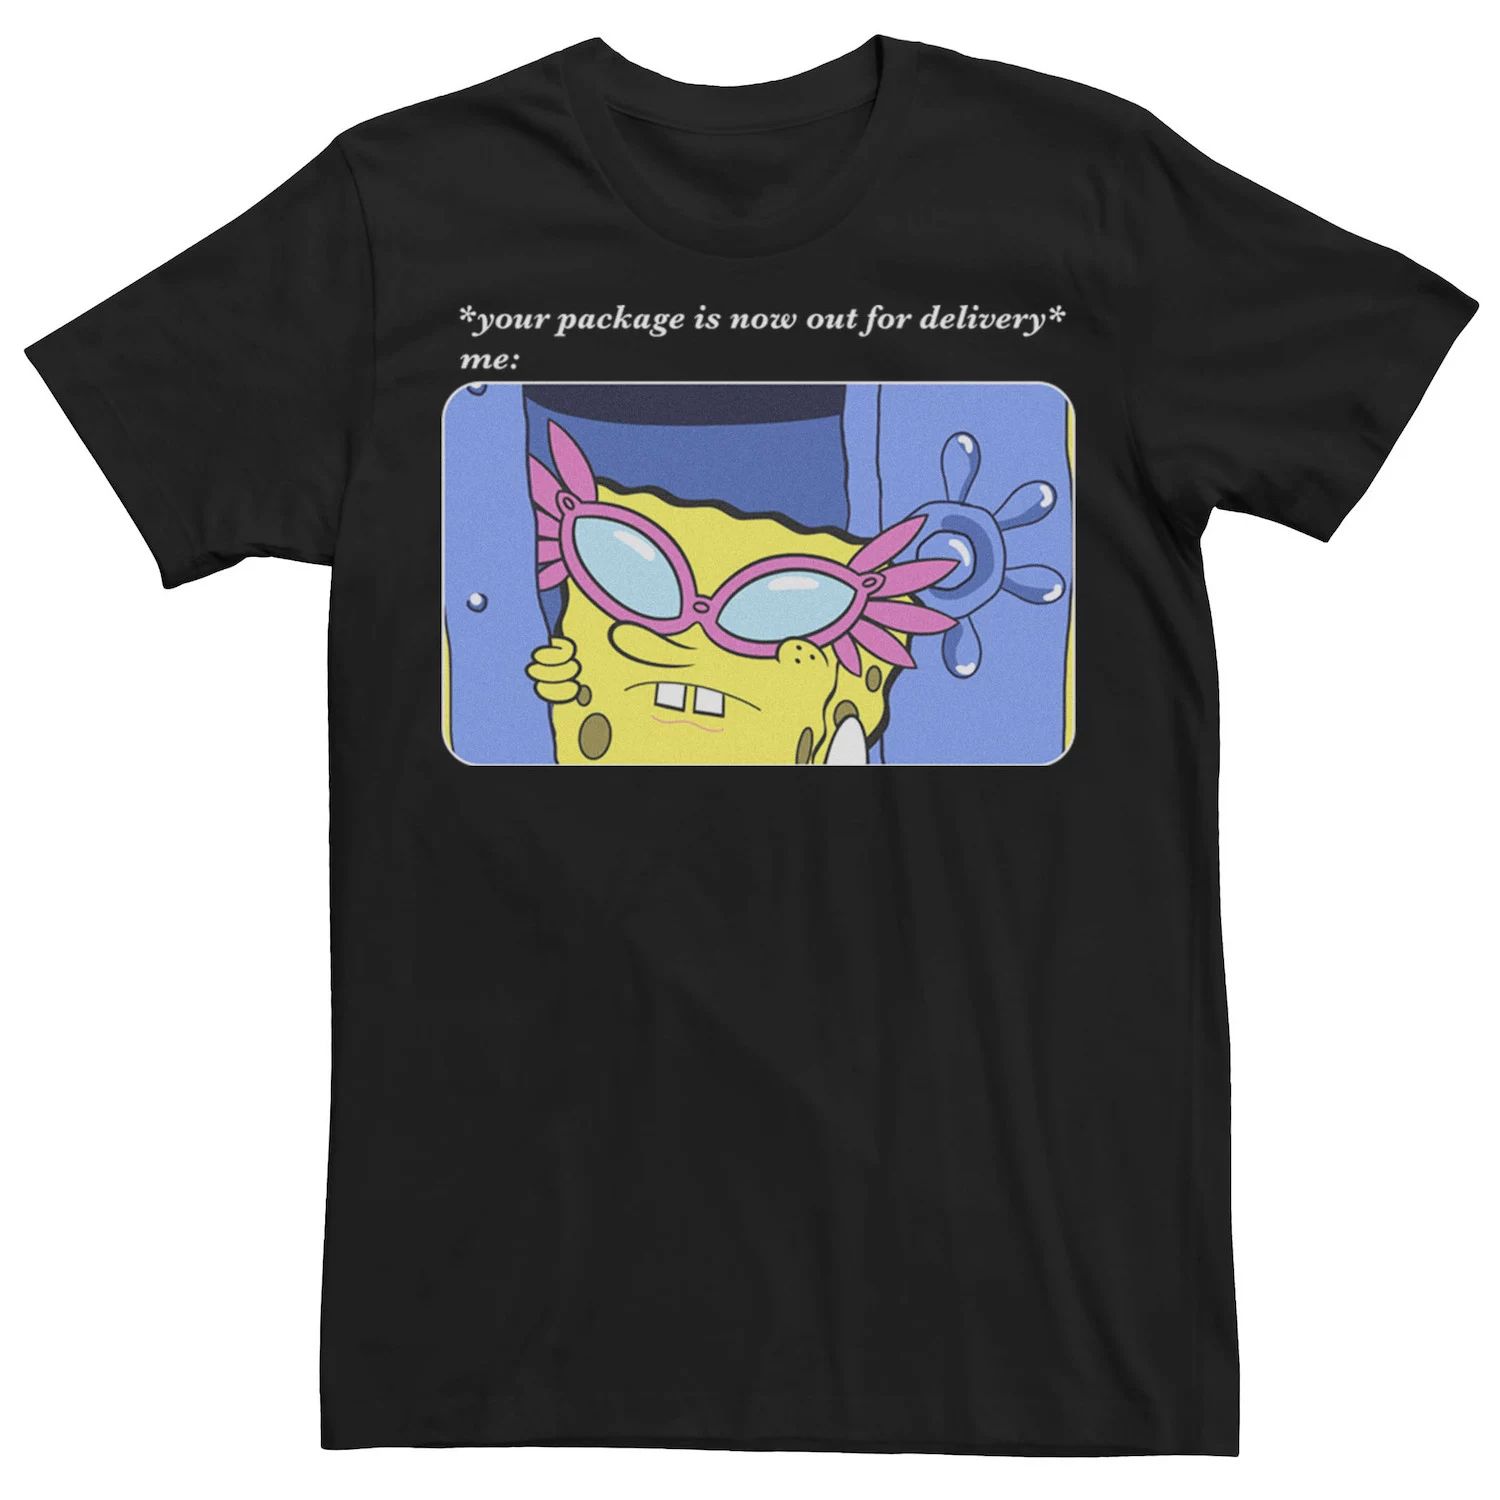 Мужская футболка с изображением Губки Боба Квадратные Штаны отправлена на доставку. Nickelodeon